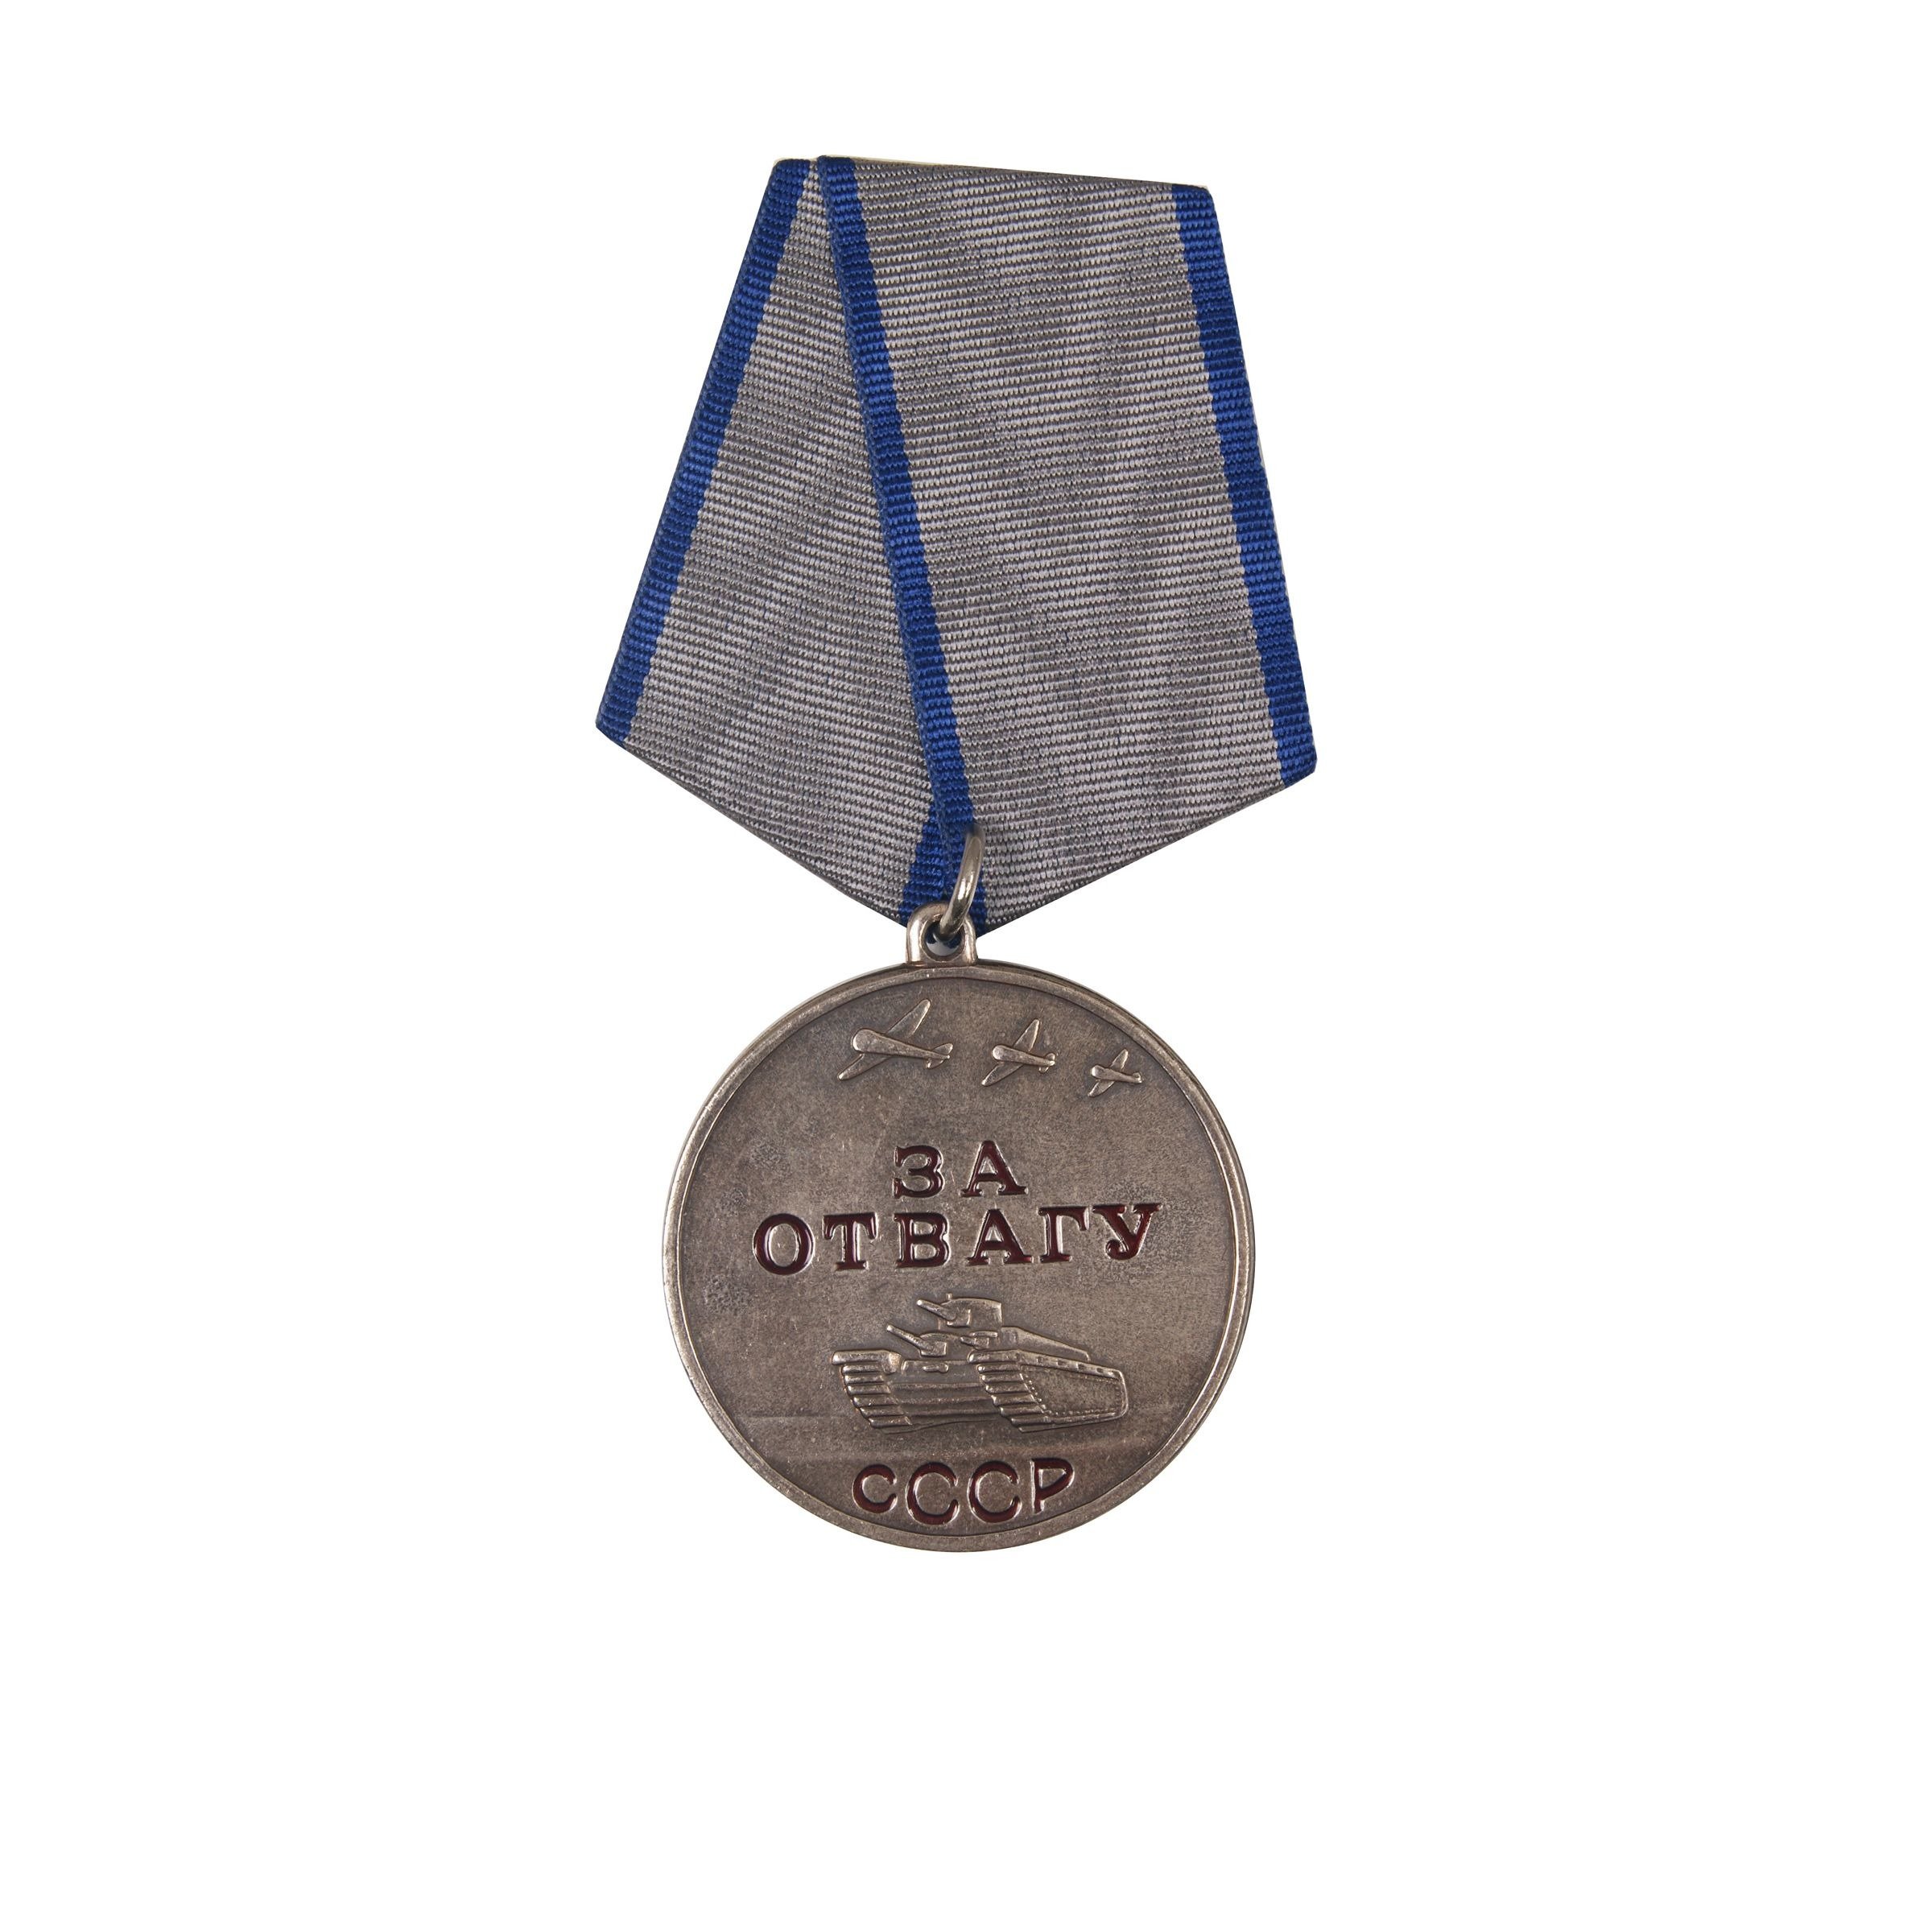 За отвагу что положено. Медаль за отвагу СССР. Медаль за отвагу 1943. 2 Медали за отвагу ВОВ. Награда медаль за отвагу.